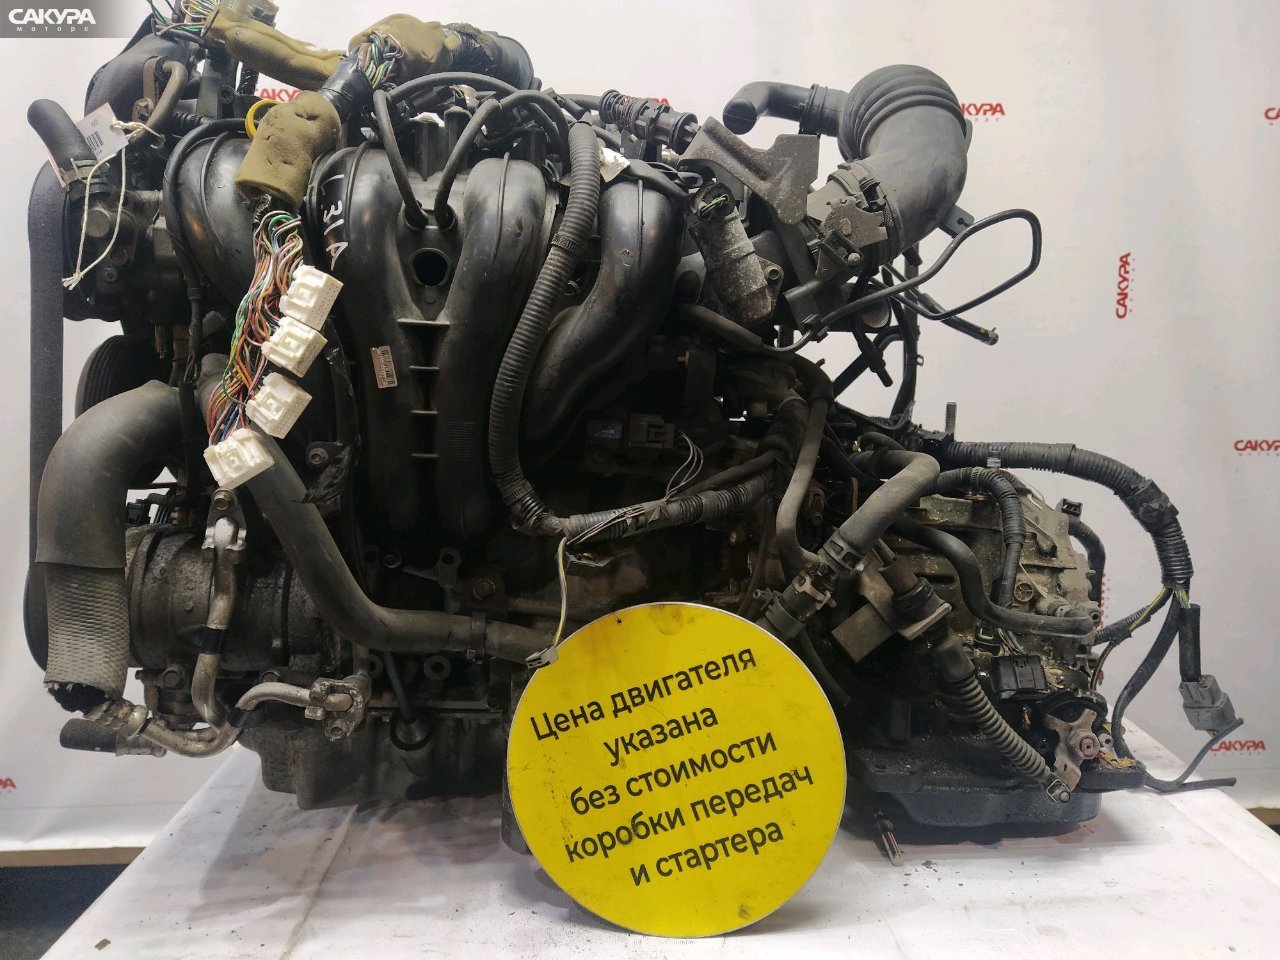 Двигатель Mazda MPV LW3W L3-DE: купить в Сакура Красноярск.